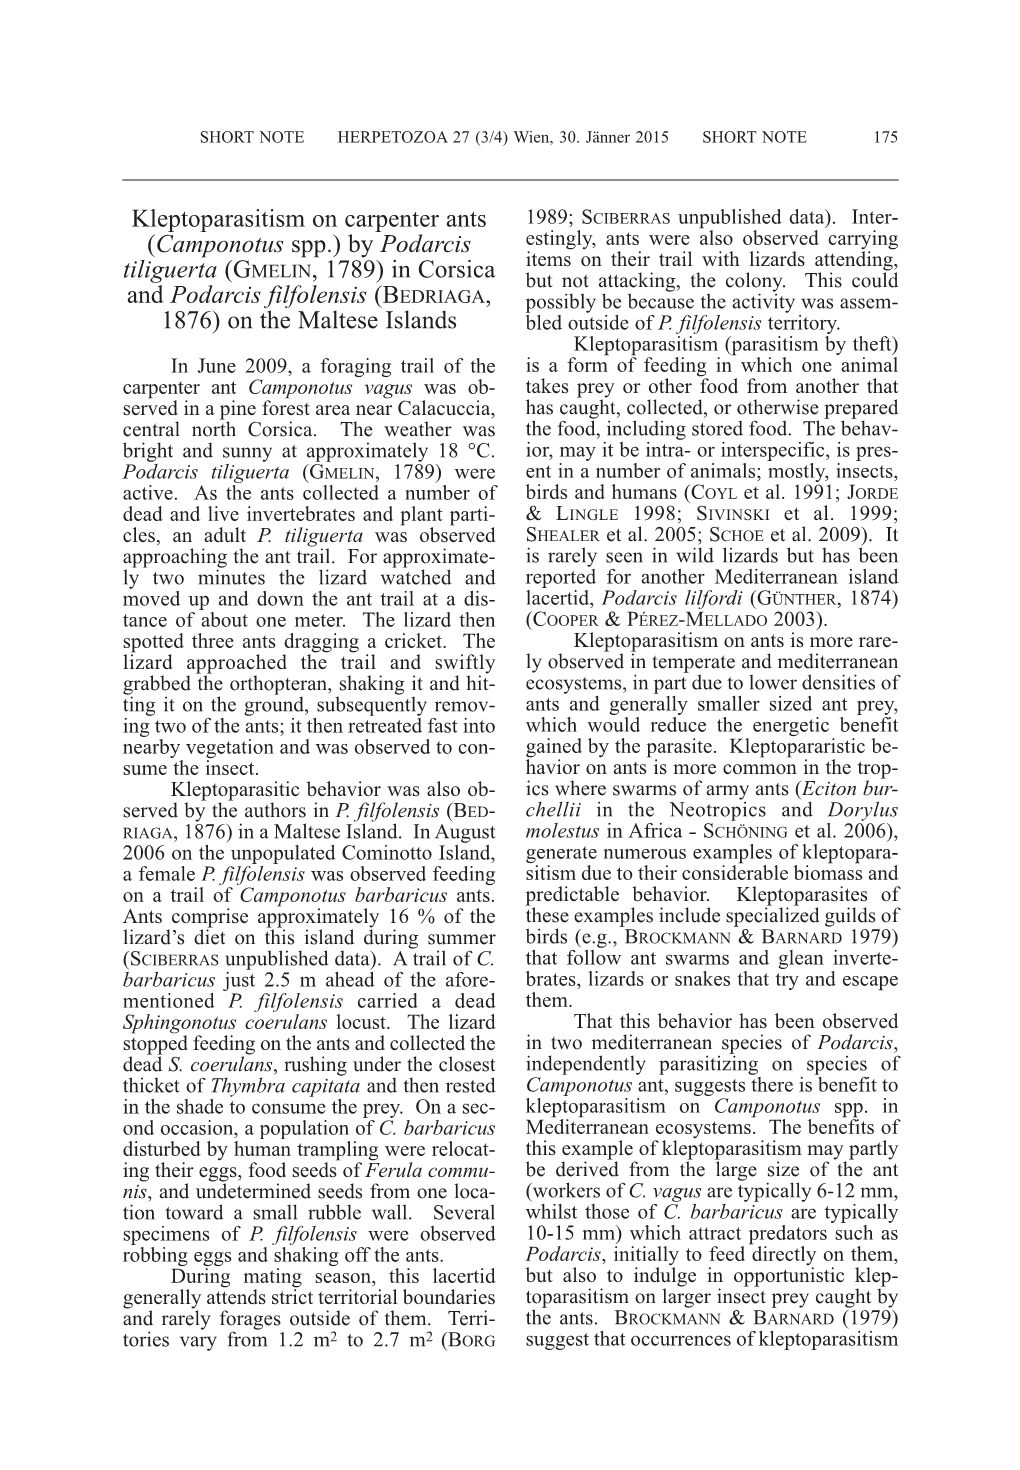 Kleptoparasitism on Carpenter Ants 1989; S Ciberras Unpublished Data)